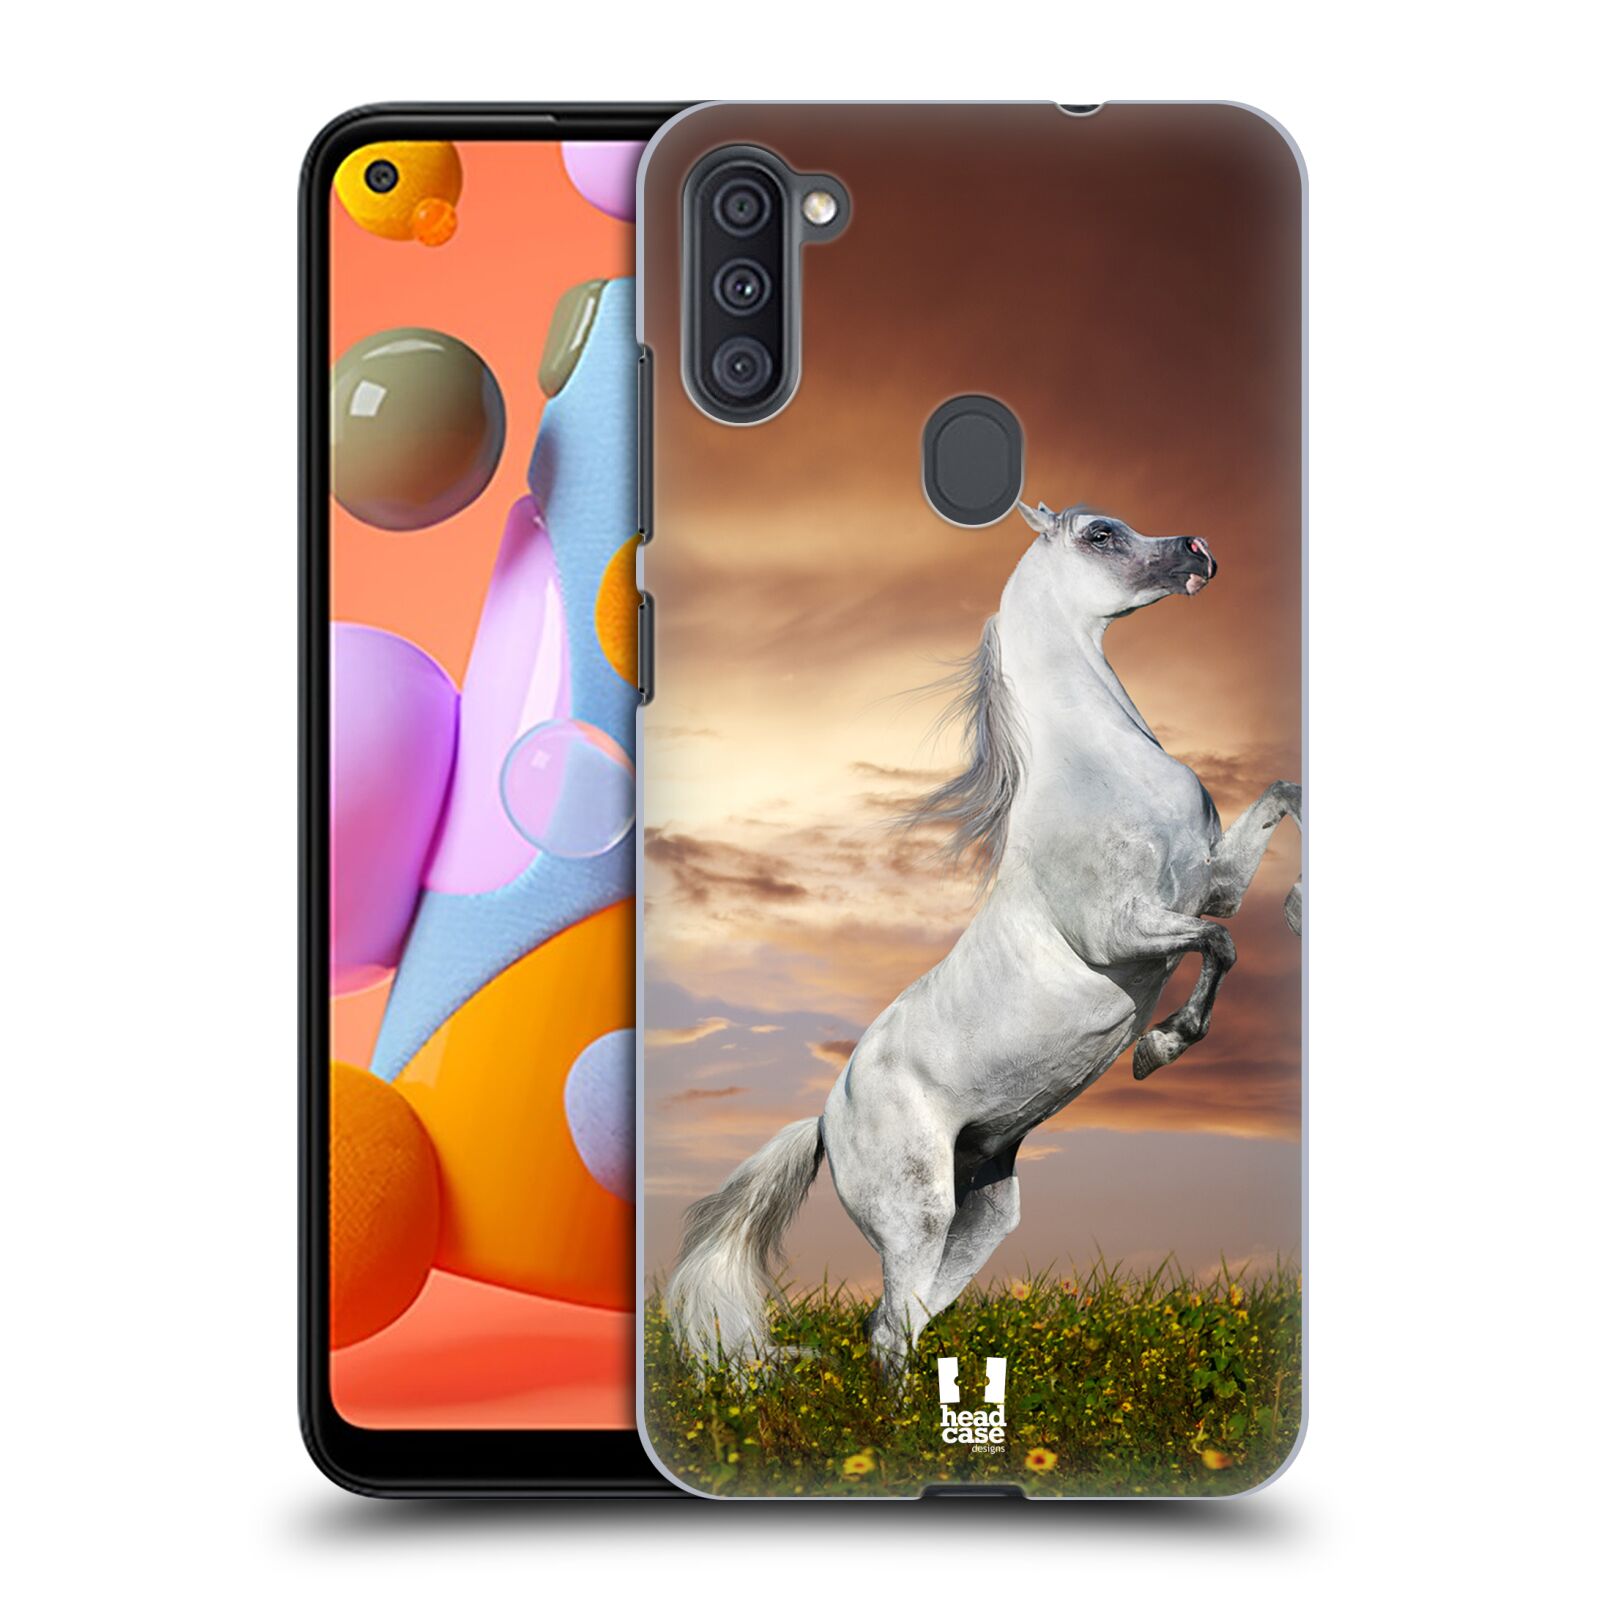 Zadní obal pro mobil Samsung Galaxy A11 - HEAD CASE - Svět zvířat divoký kůň